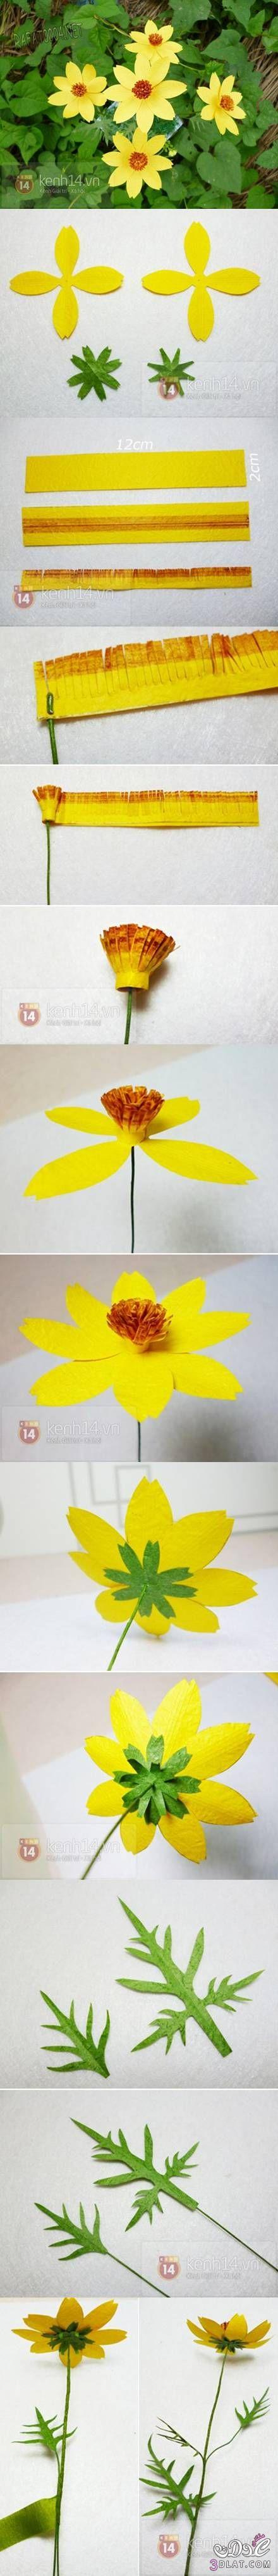 طريقة عمل وردة صفراء من الورق Yellow Paper Flower